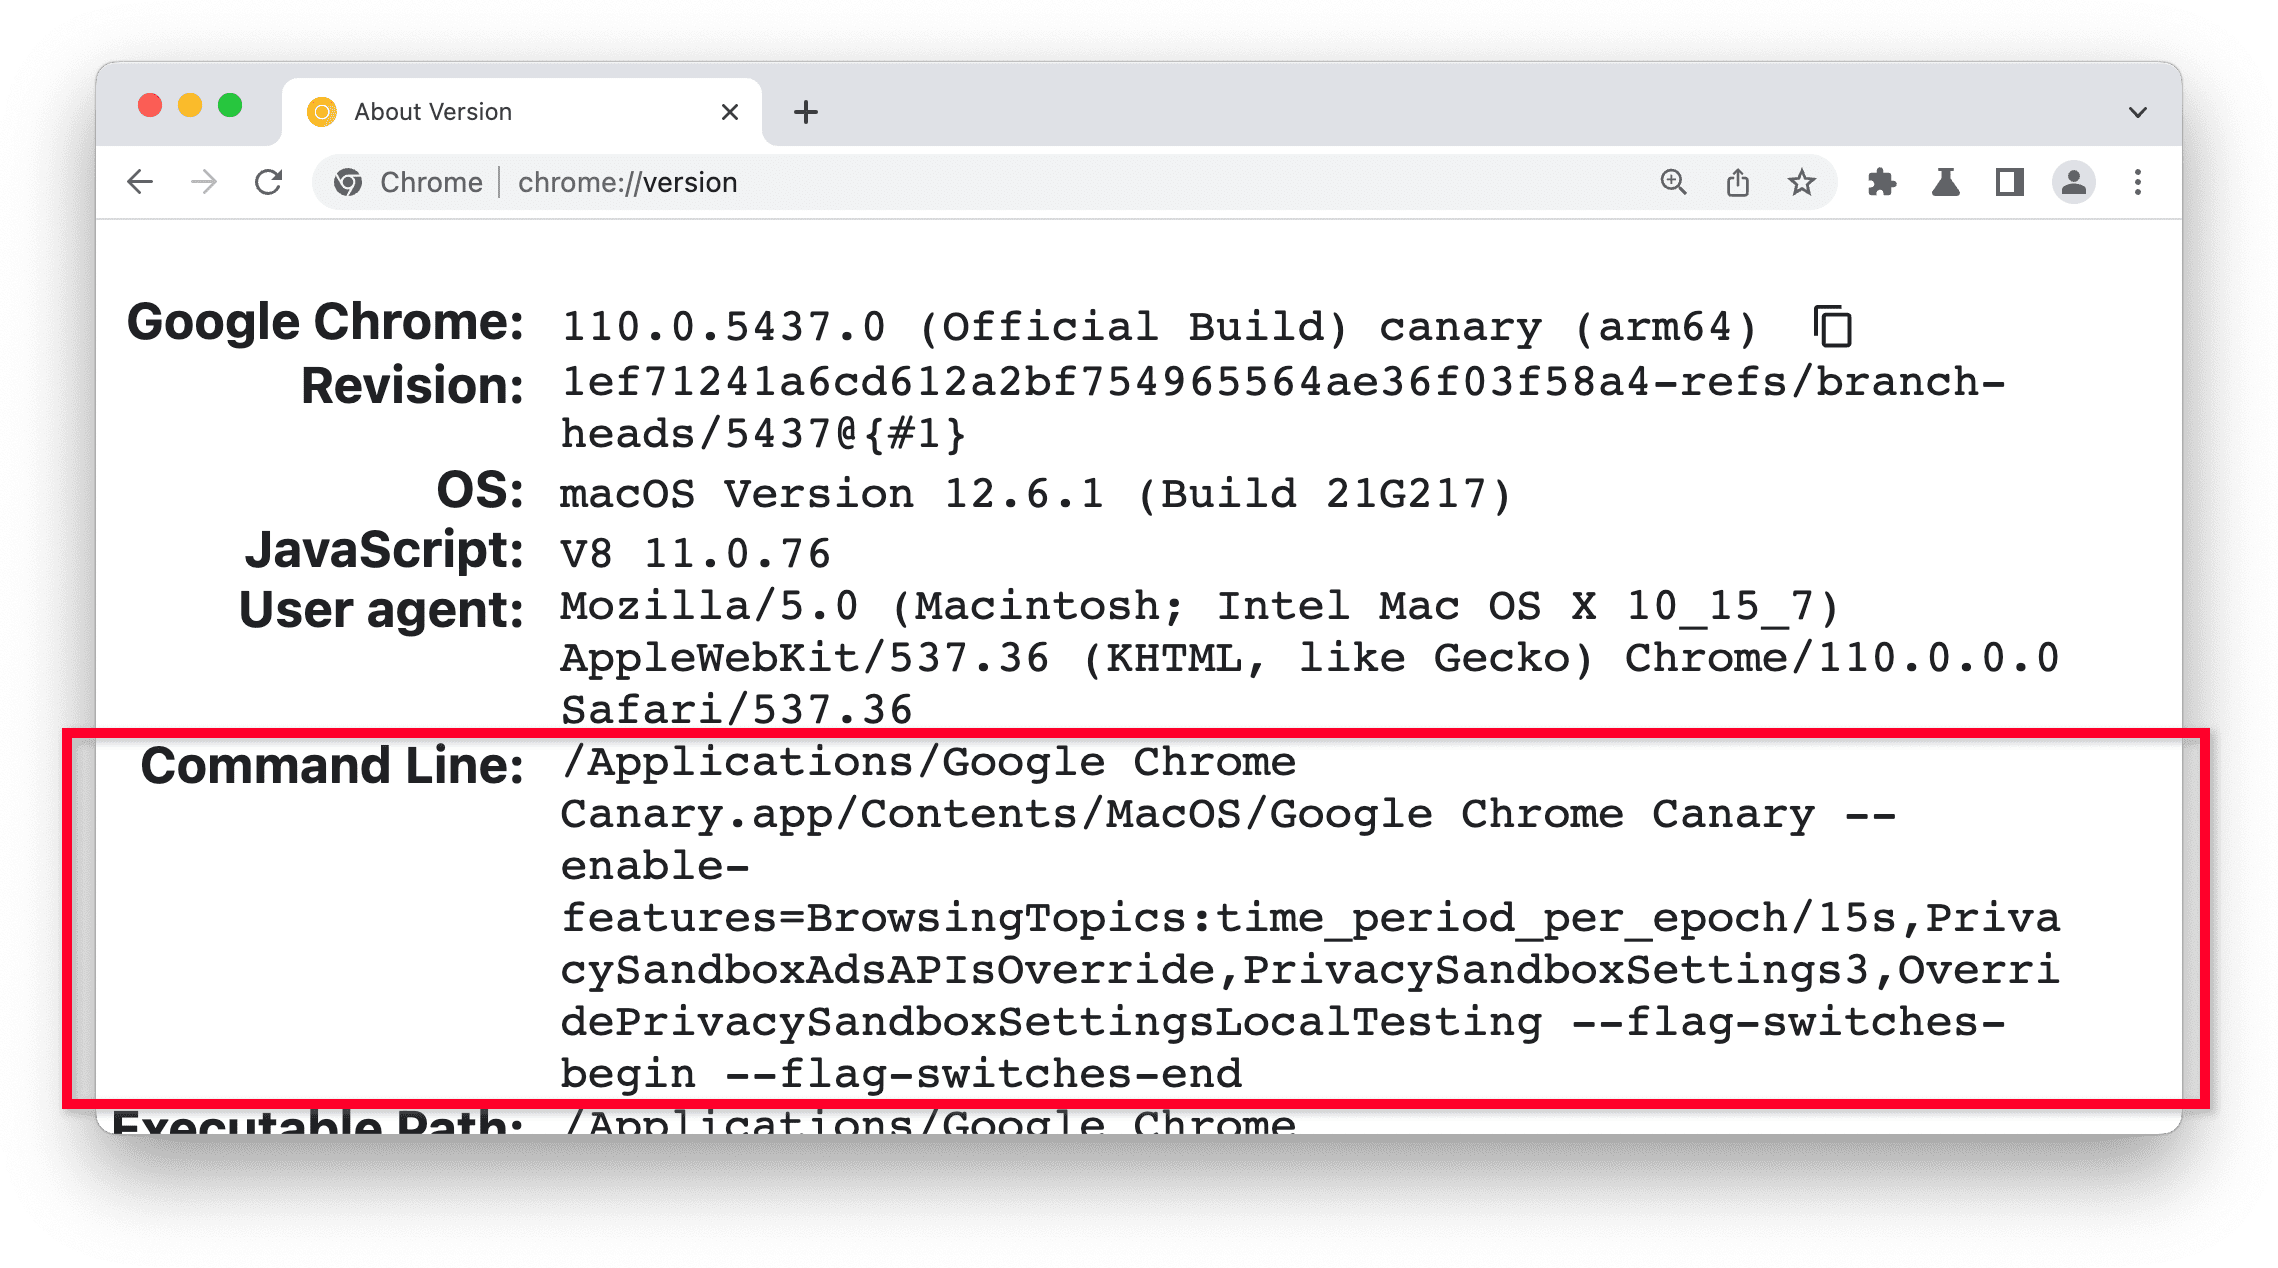 chrome://version
trong Chrome Canary, phần Dòng lệnh được làm nổi bật.